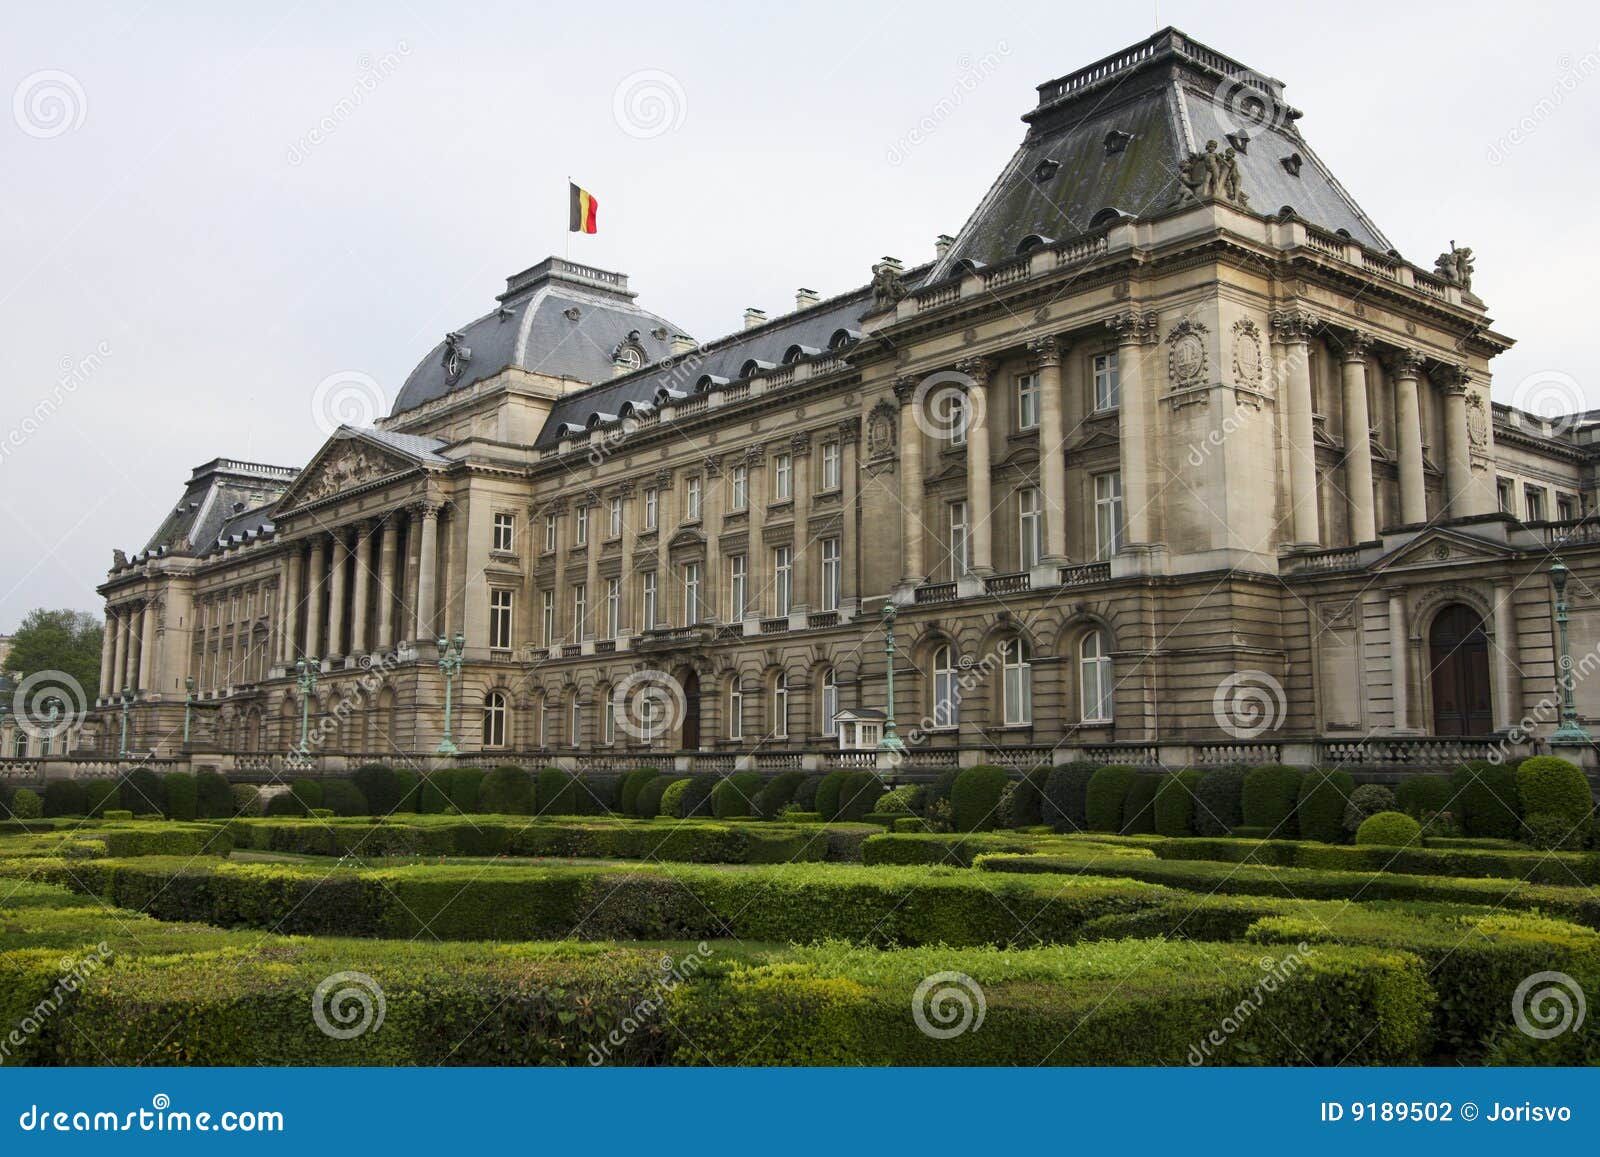 Royal Palace en Bruselas. El palacio real en el centro de Bruselas, Bélgica